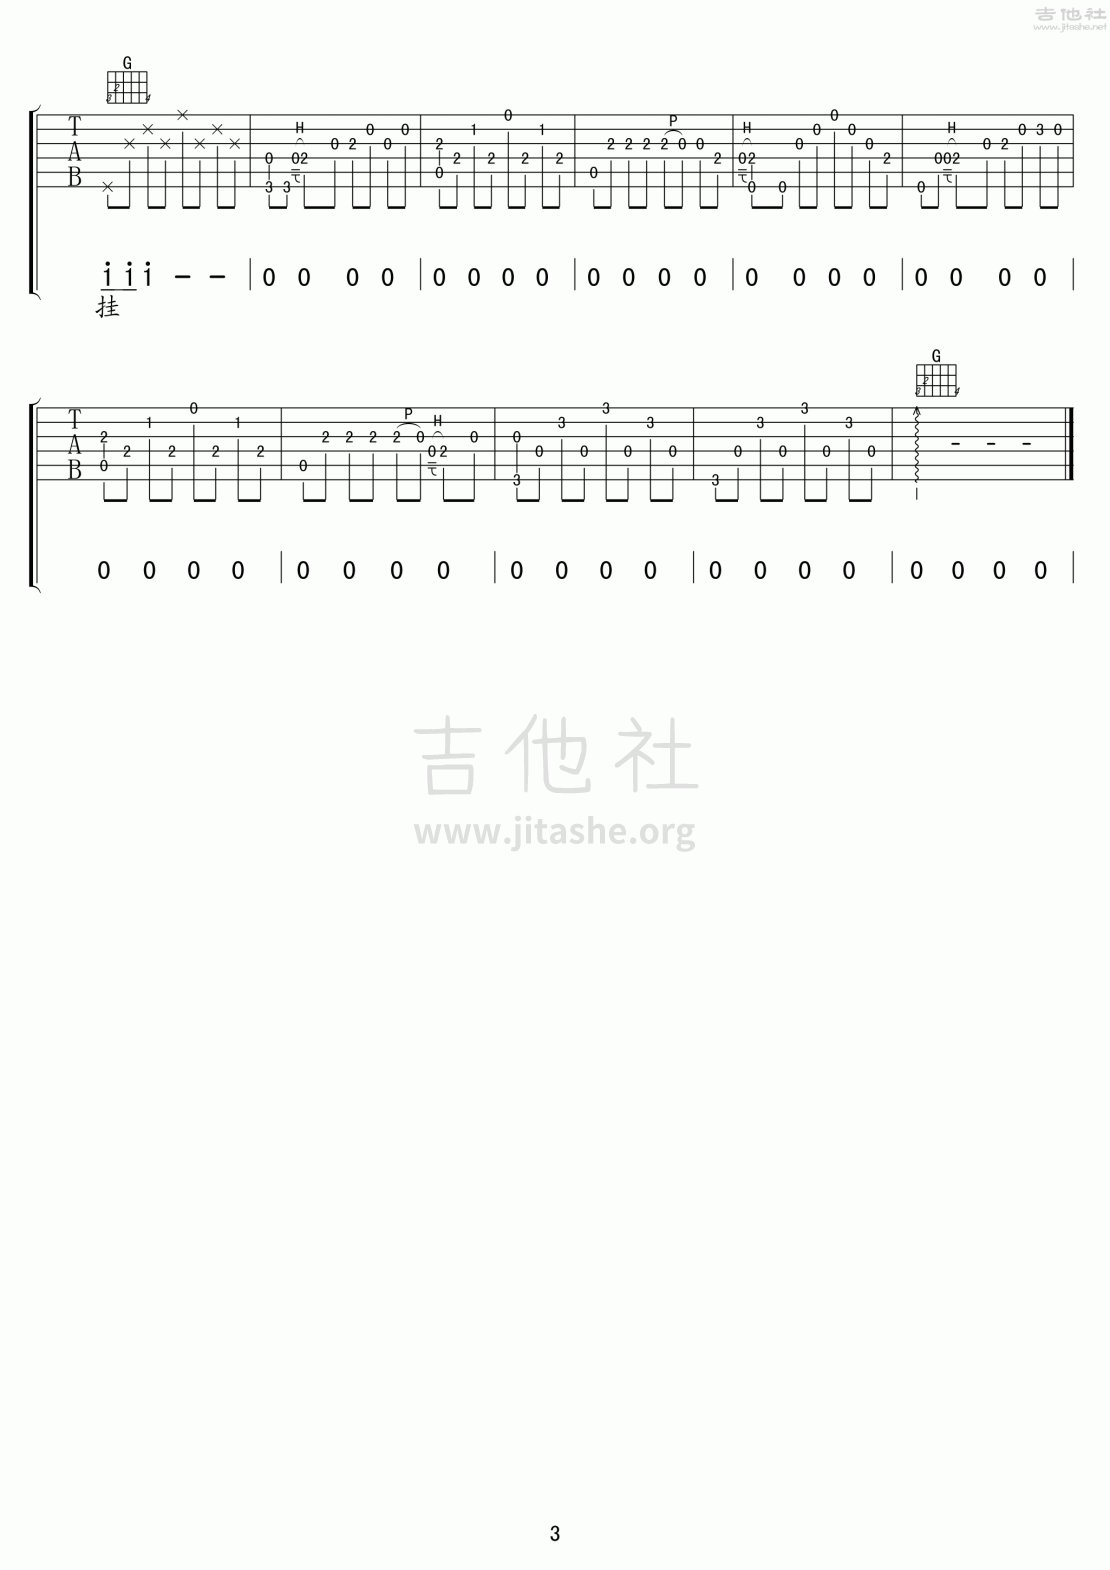 嘀嗒吉他谱(图片谱,弹唱,分解和弦,大伟)_侃侃_嘀嗒03.gif